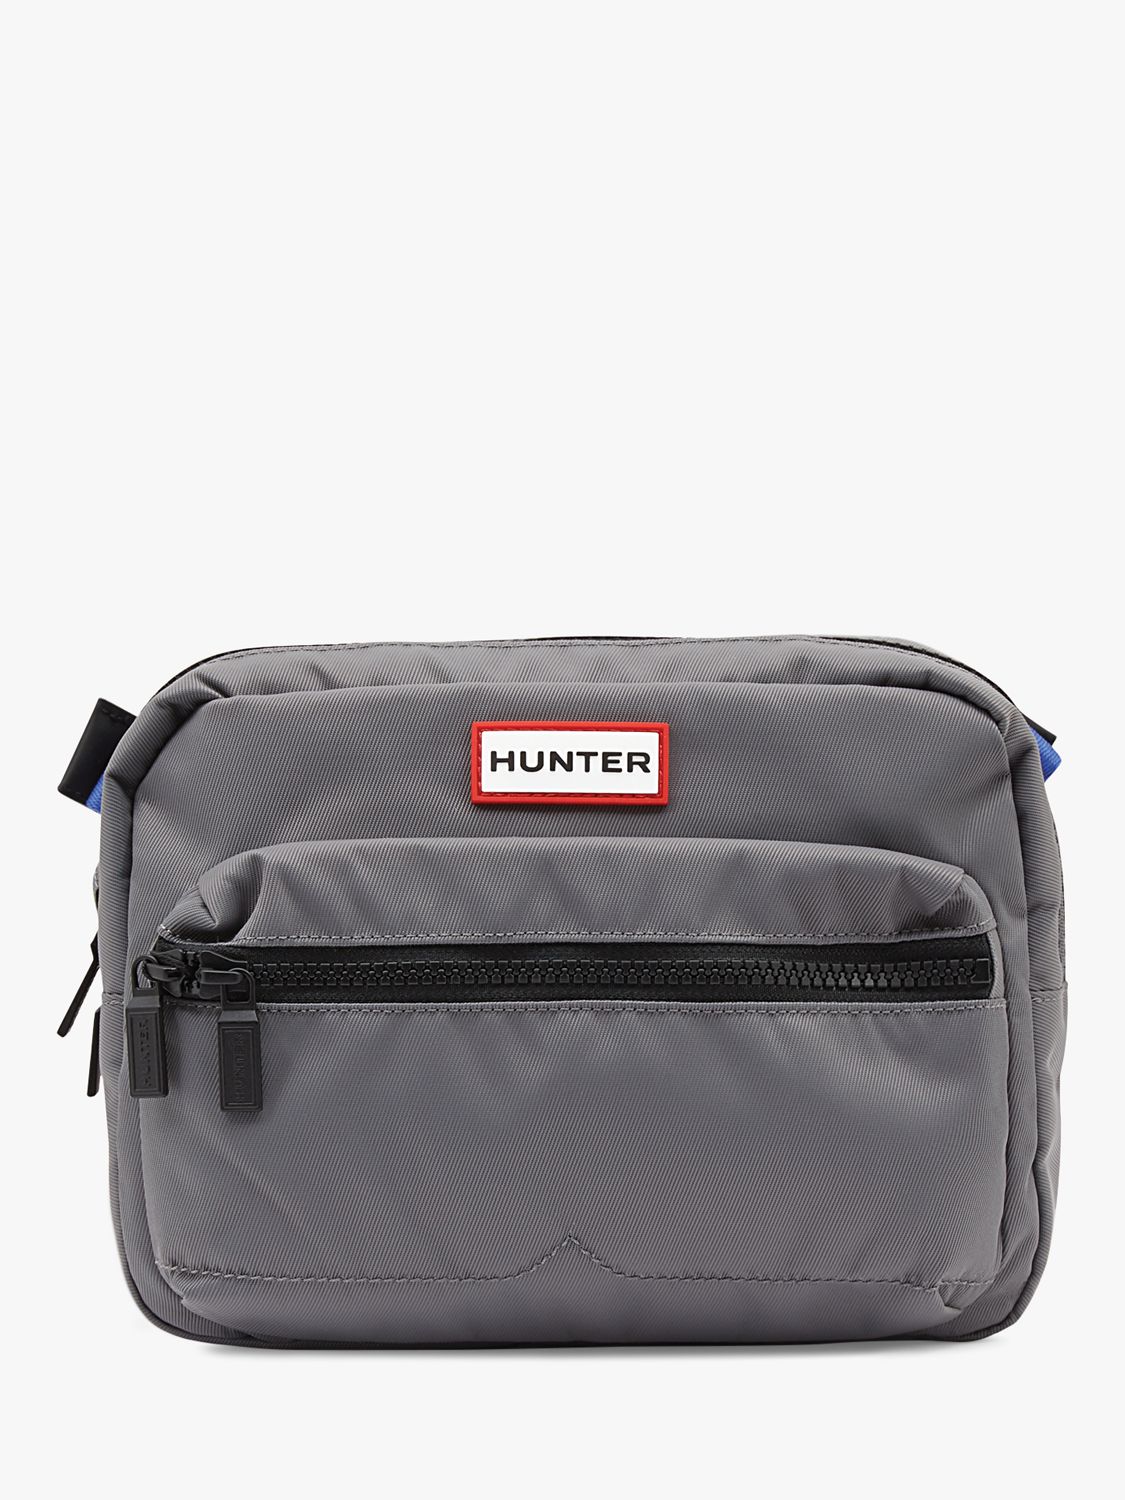 Hunter Original Nylon Bum Bag, Stratus Grey at John Lewis & Partners